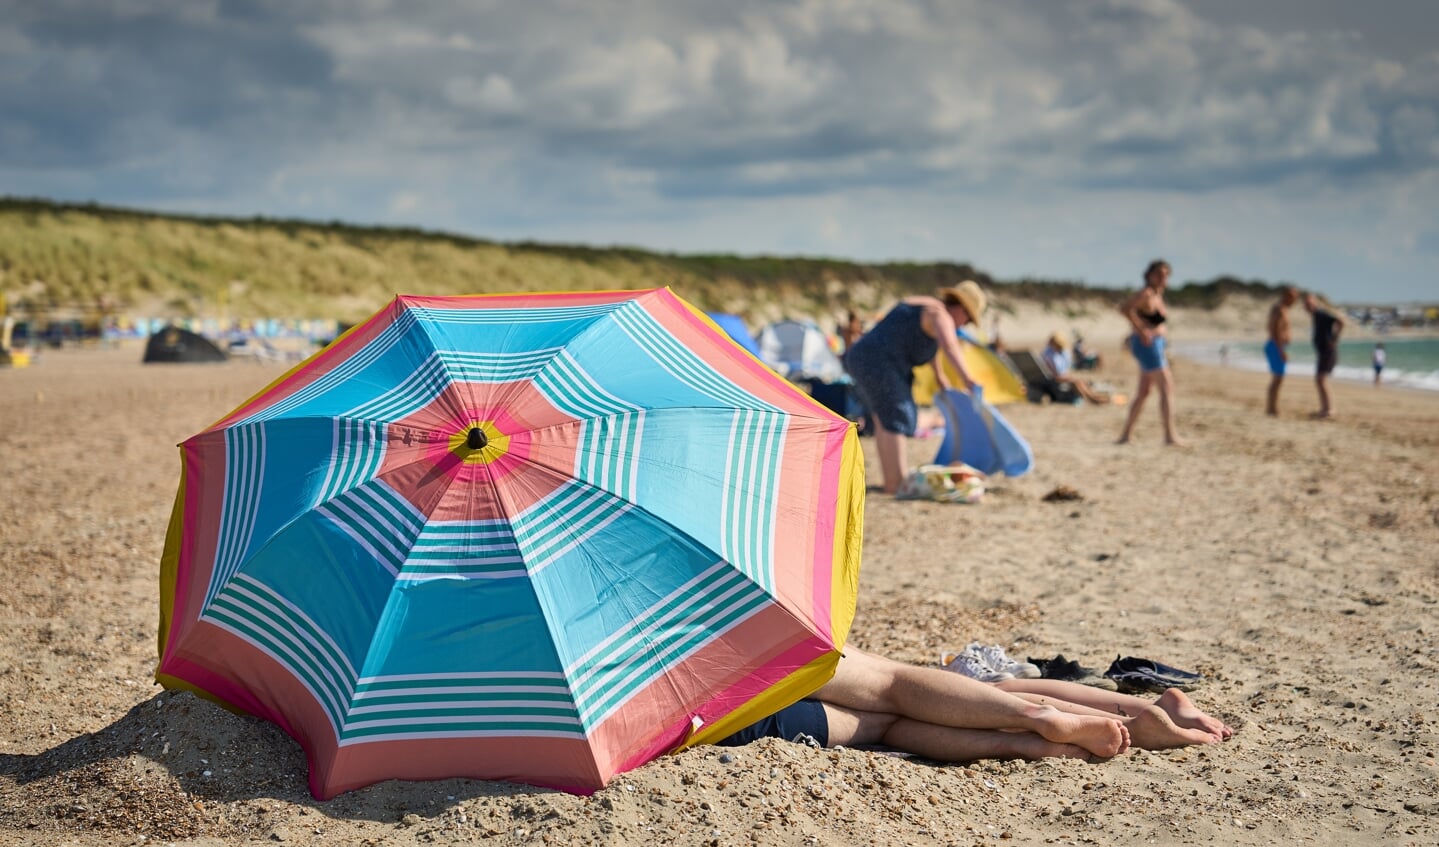 2022-07-27 16:37:13 OUDDORP - Strandgangers op het strand. Het strand van Goeree-Overflakkee is verkozen tot het schoonste strand van Nederland. ANP PHIL NIJHUIS